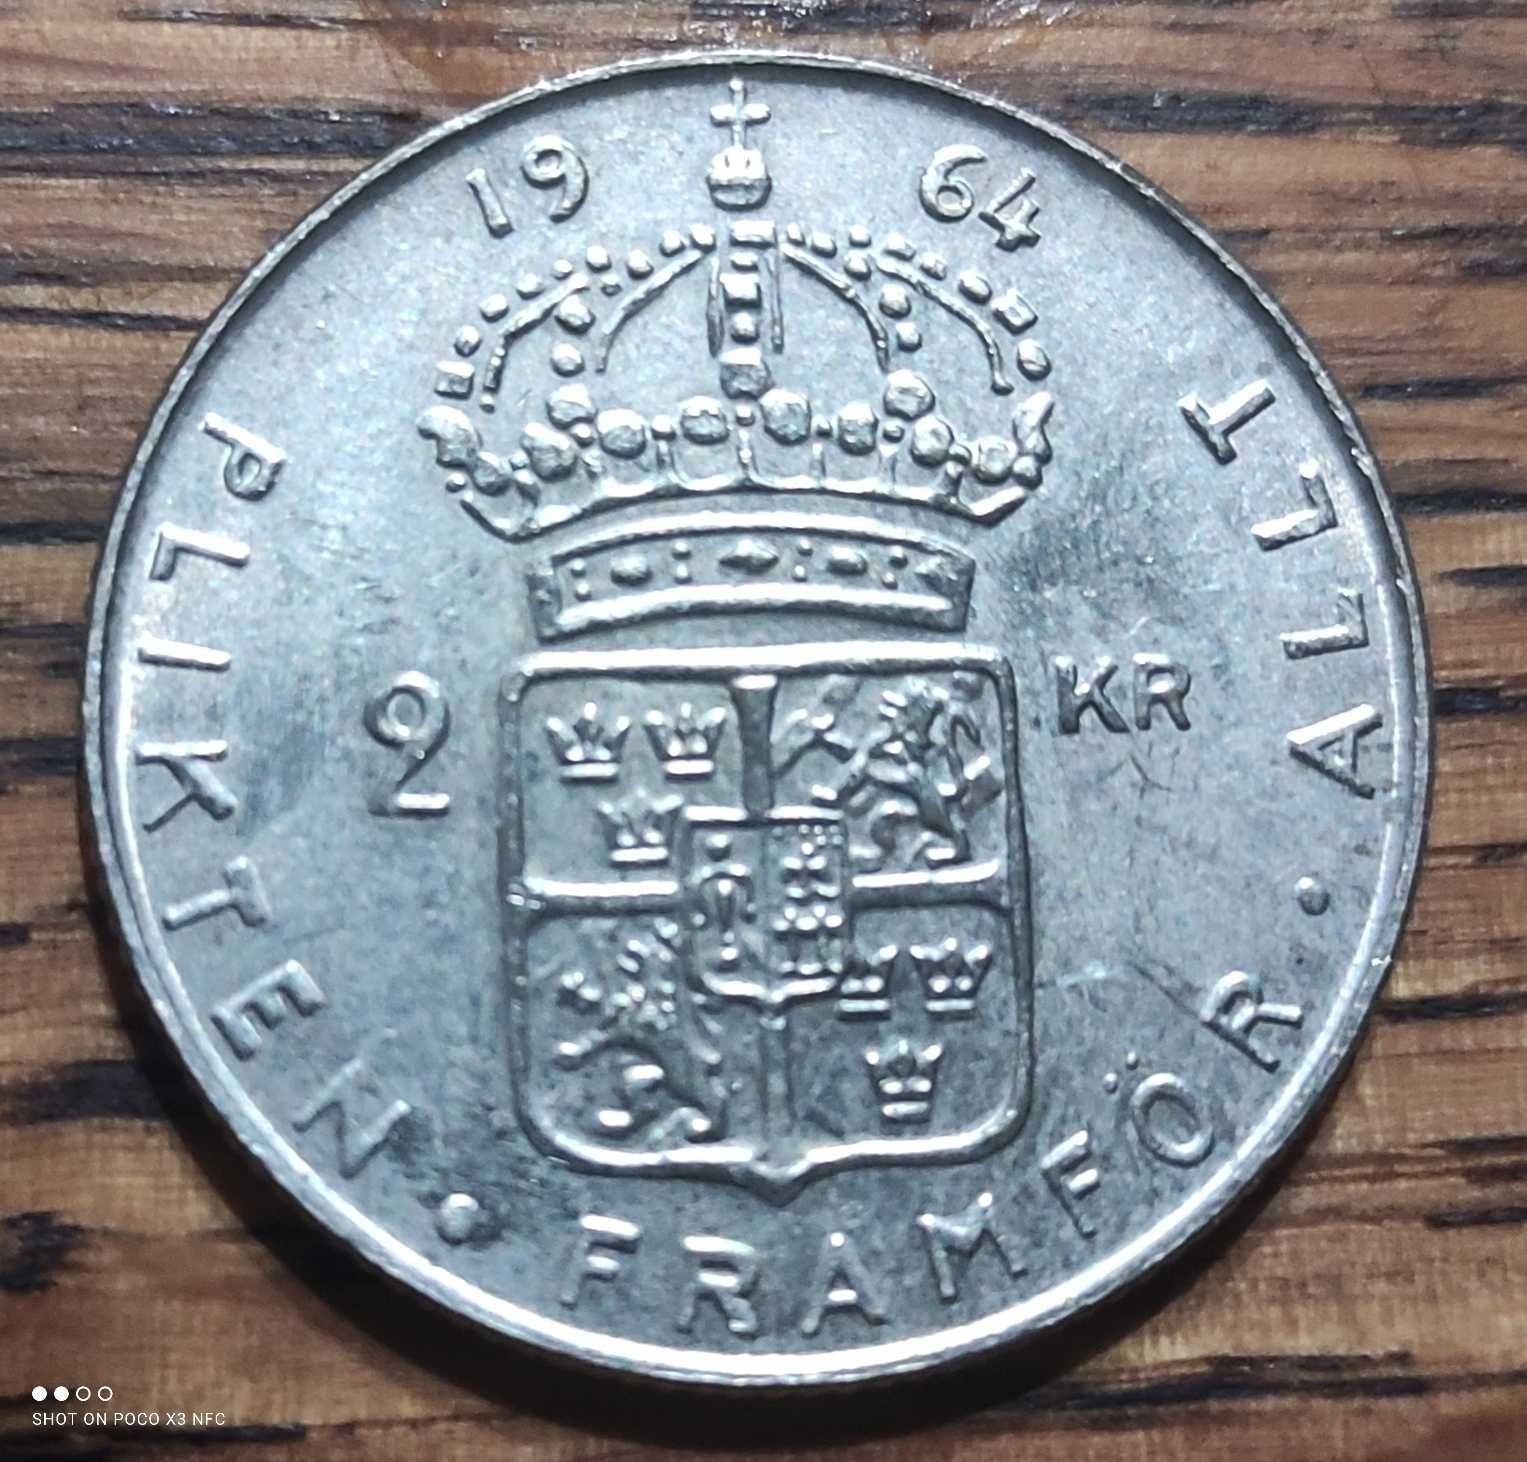 Moneta srebrna 2 korony z 1964 roku Szwecja Ag srebro bardzo ładna